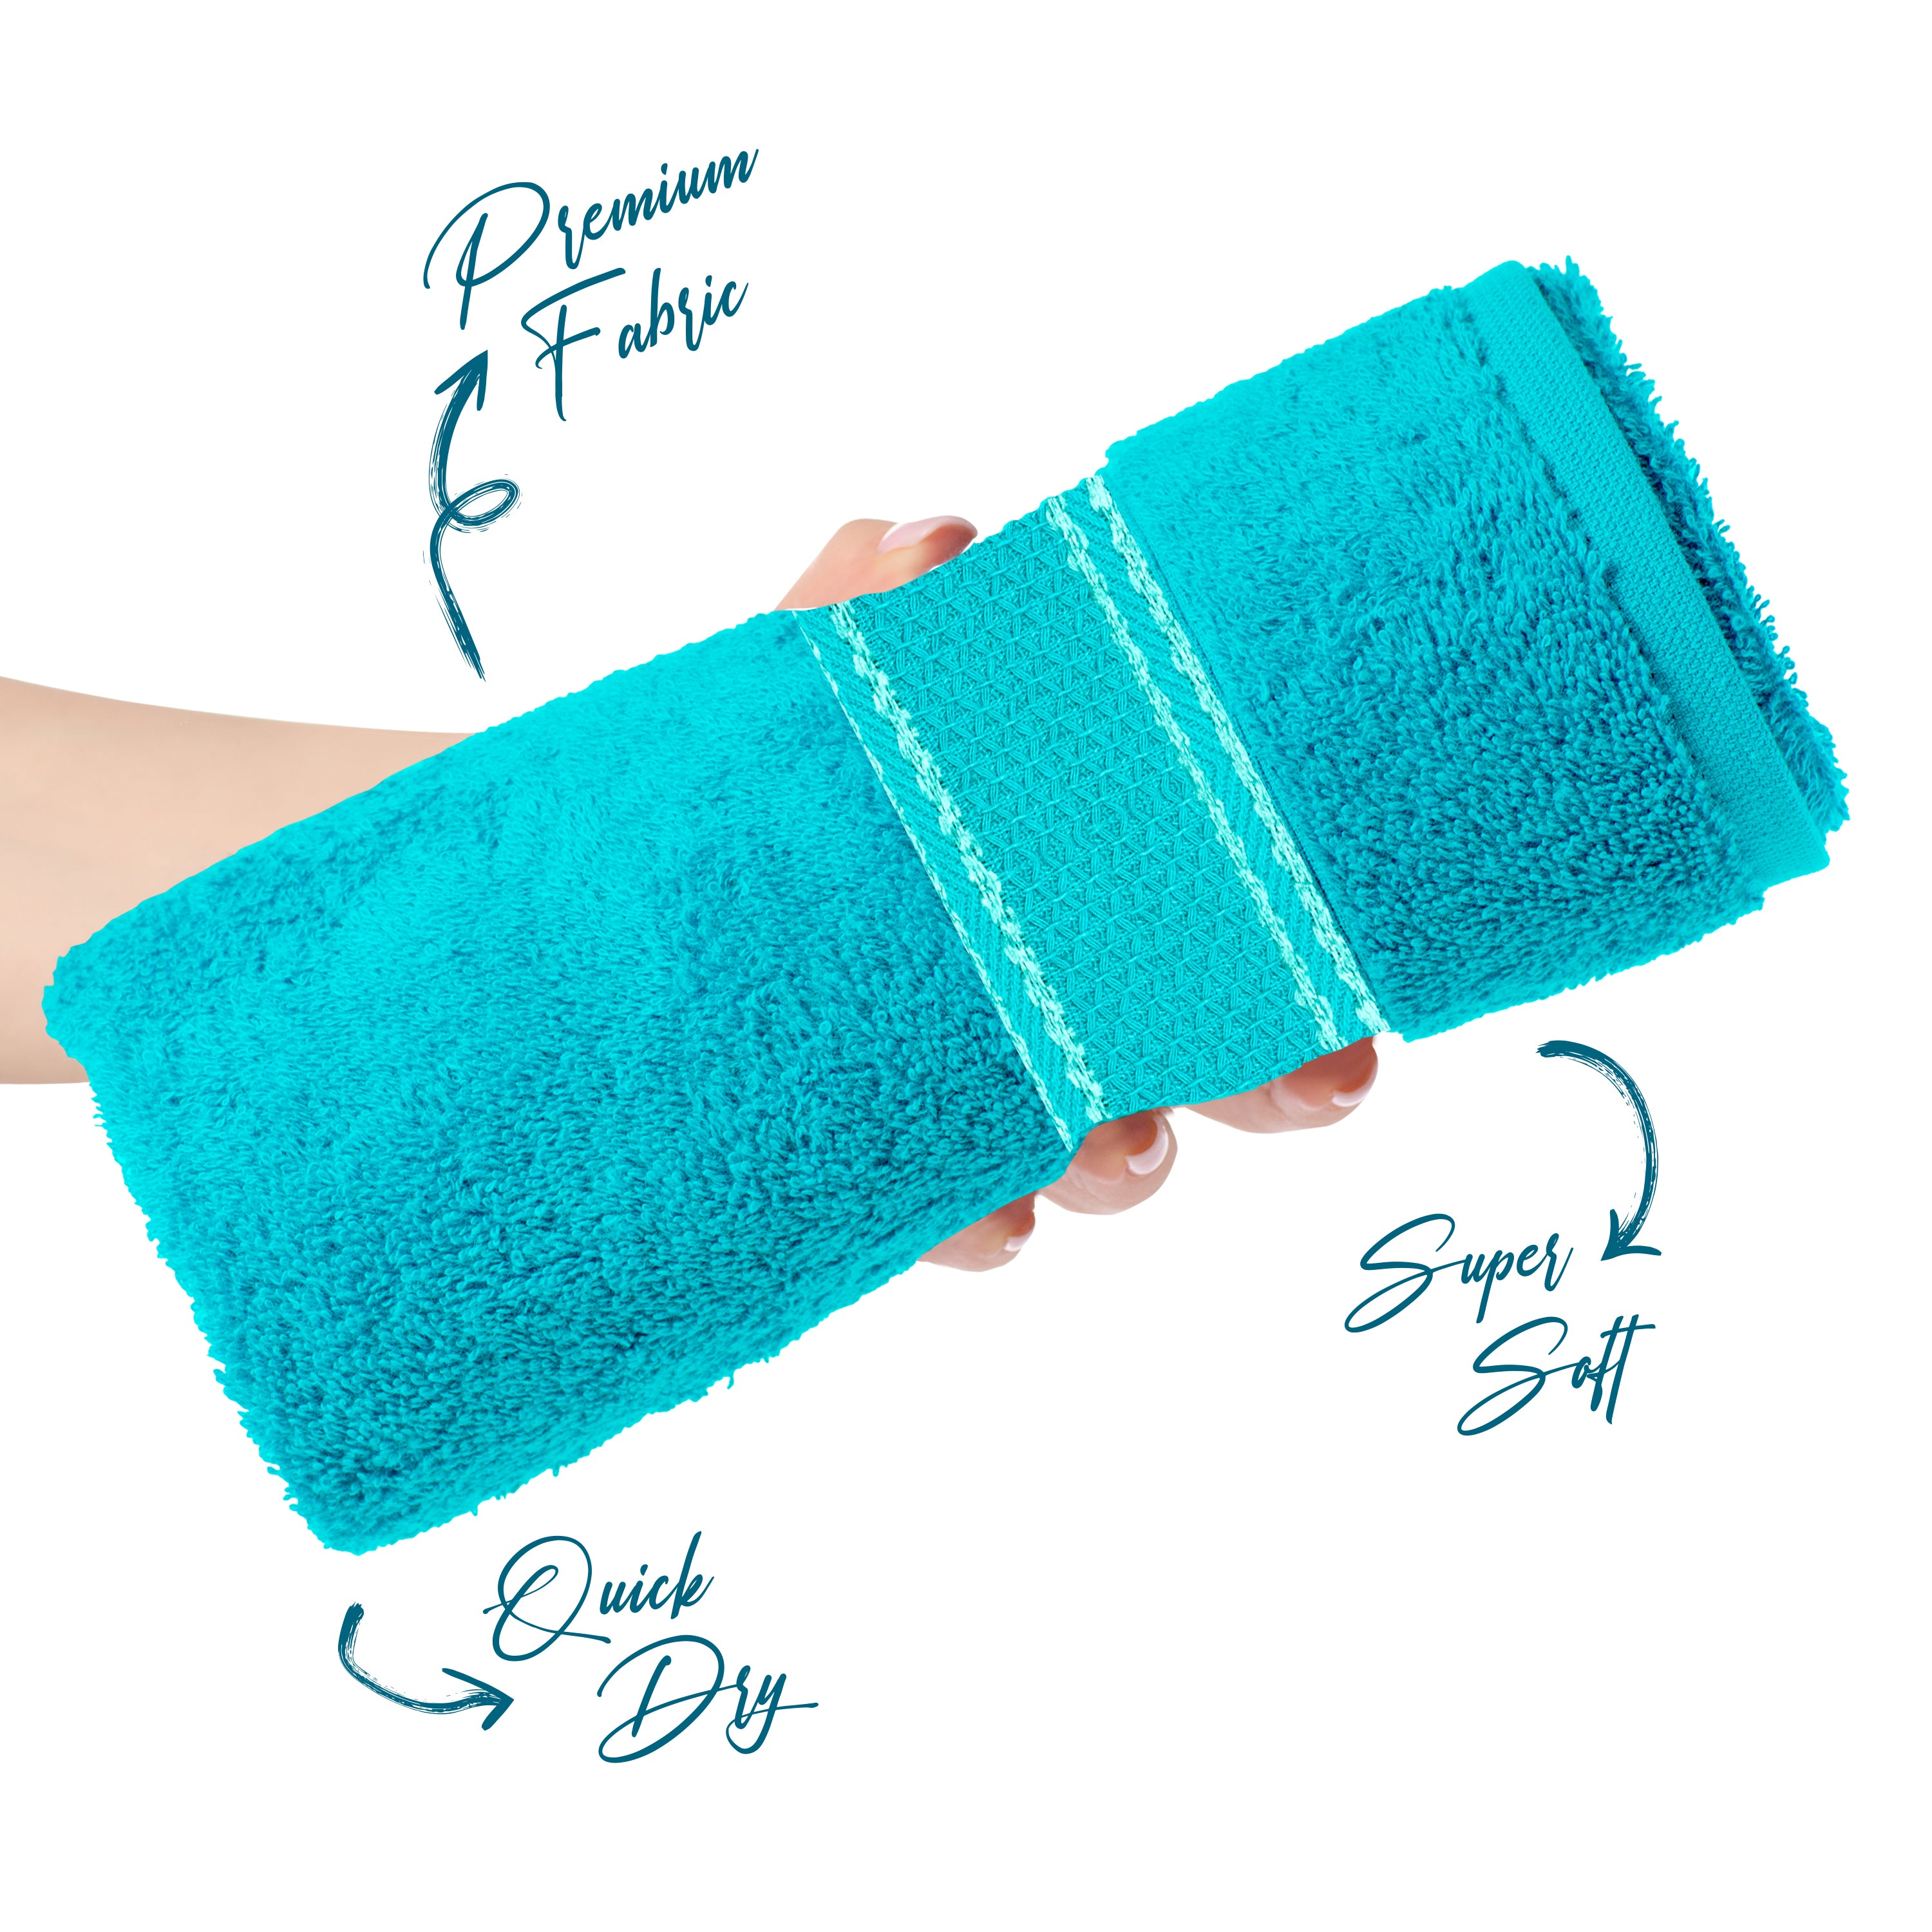 Aquacado 38 x 58 cm Hand Towel Set Of 4 Charcoal Grey & Turq Blue